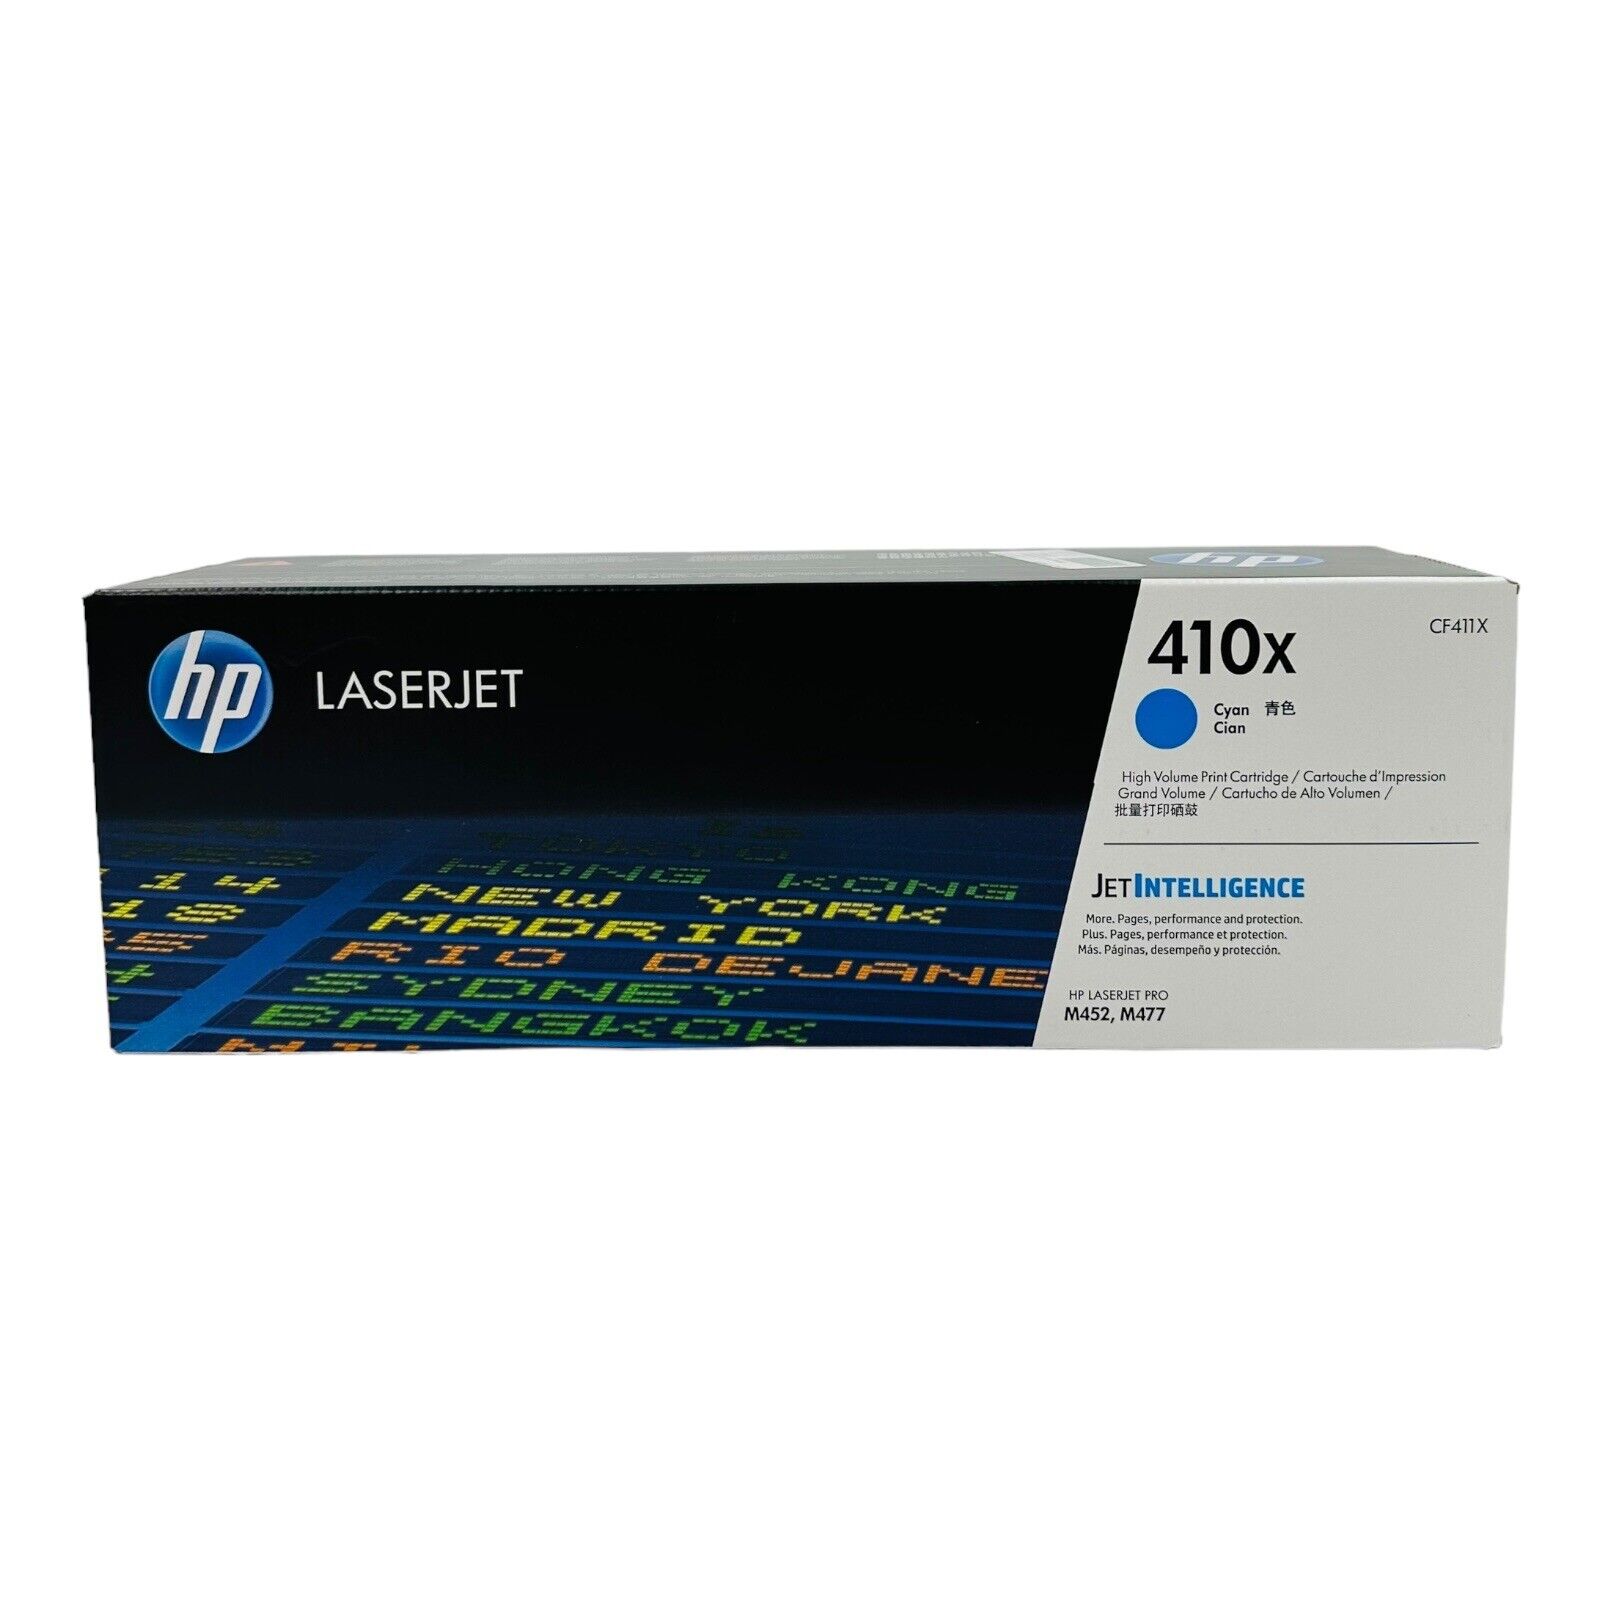 Genuine HP 410x Cyan High Volume Print Cartridge, CF411X